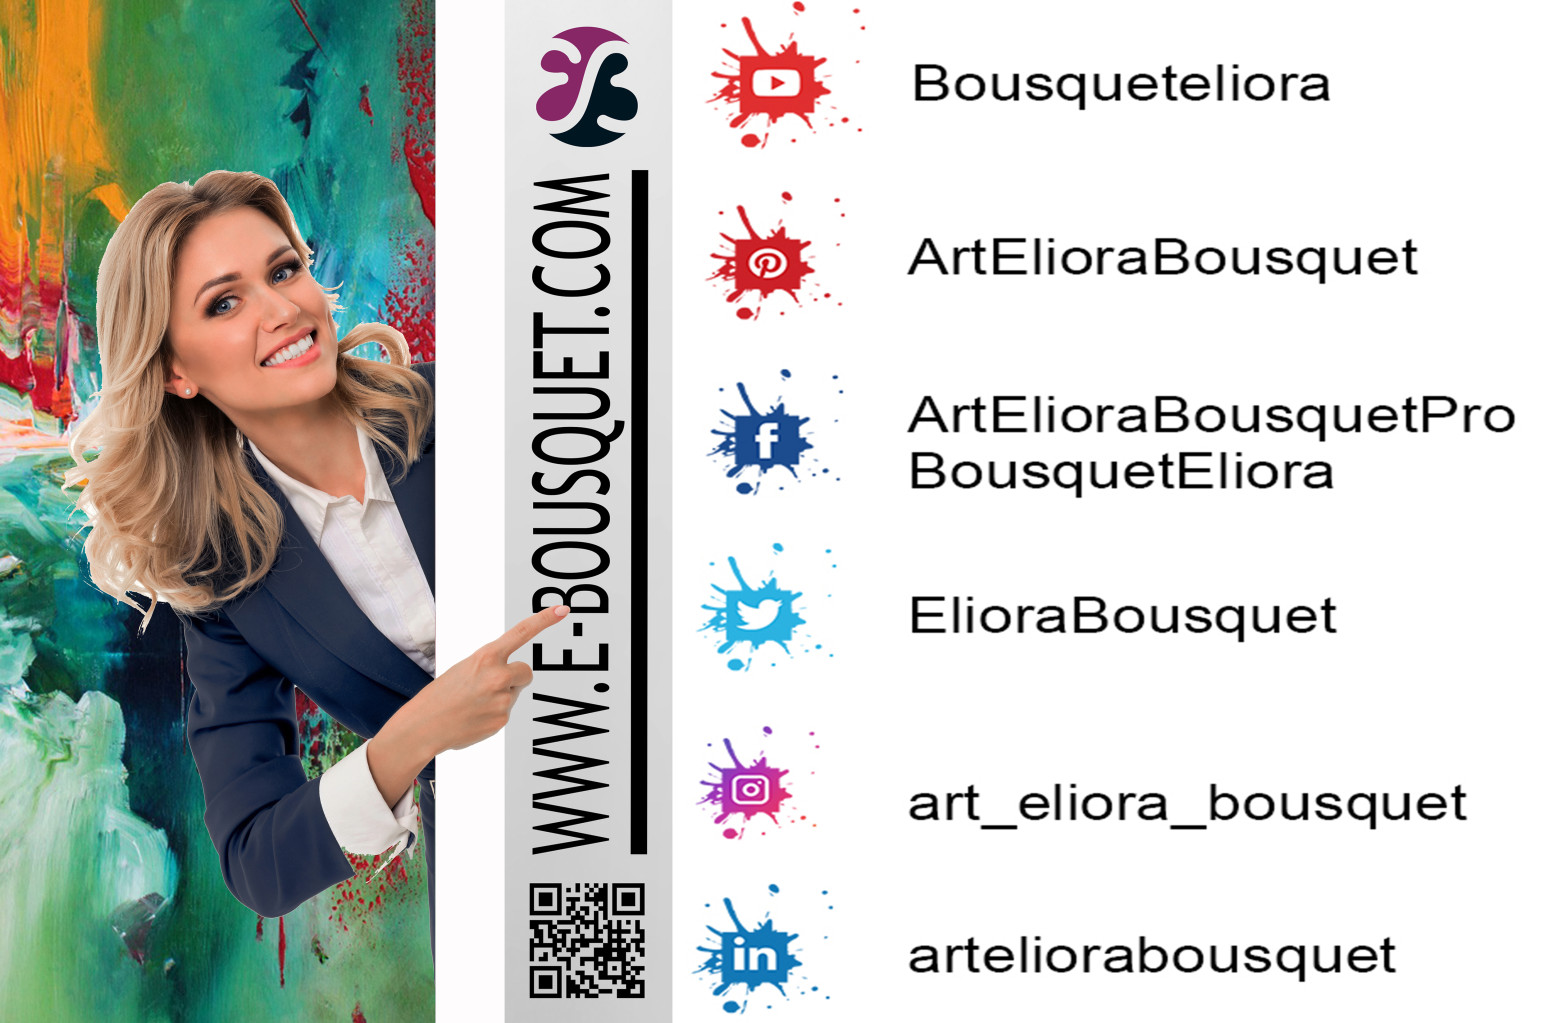 Visuel présentant les comptes d'Eliora Bousquet sur les réseaux sociaux